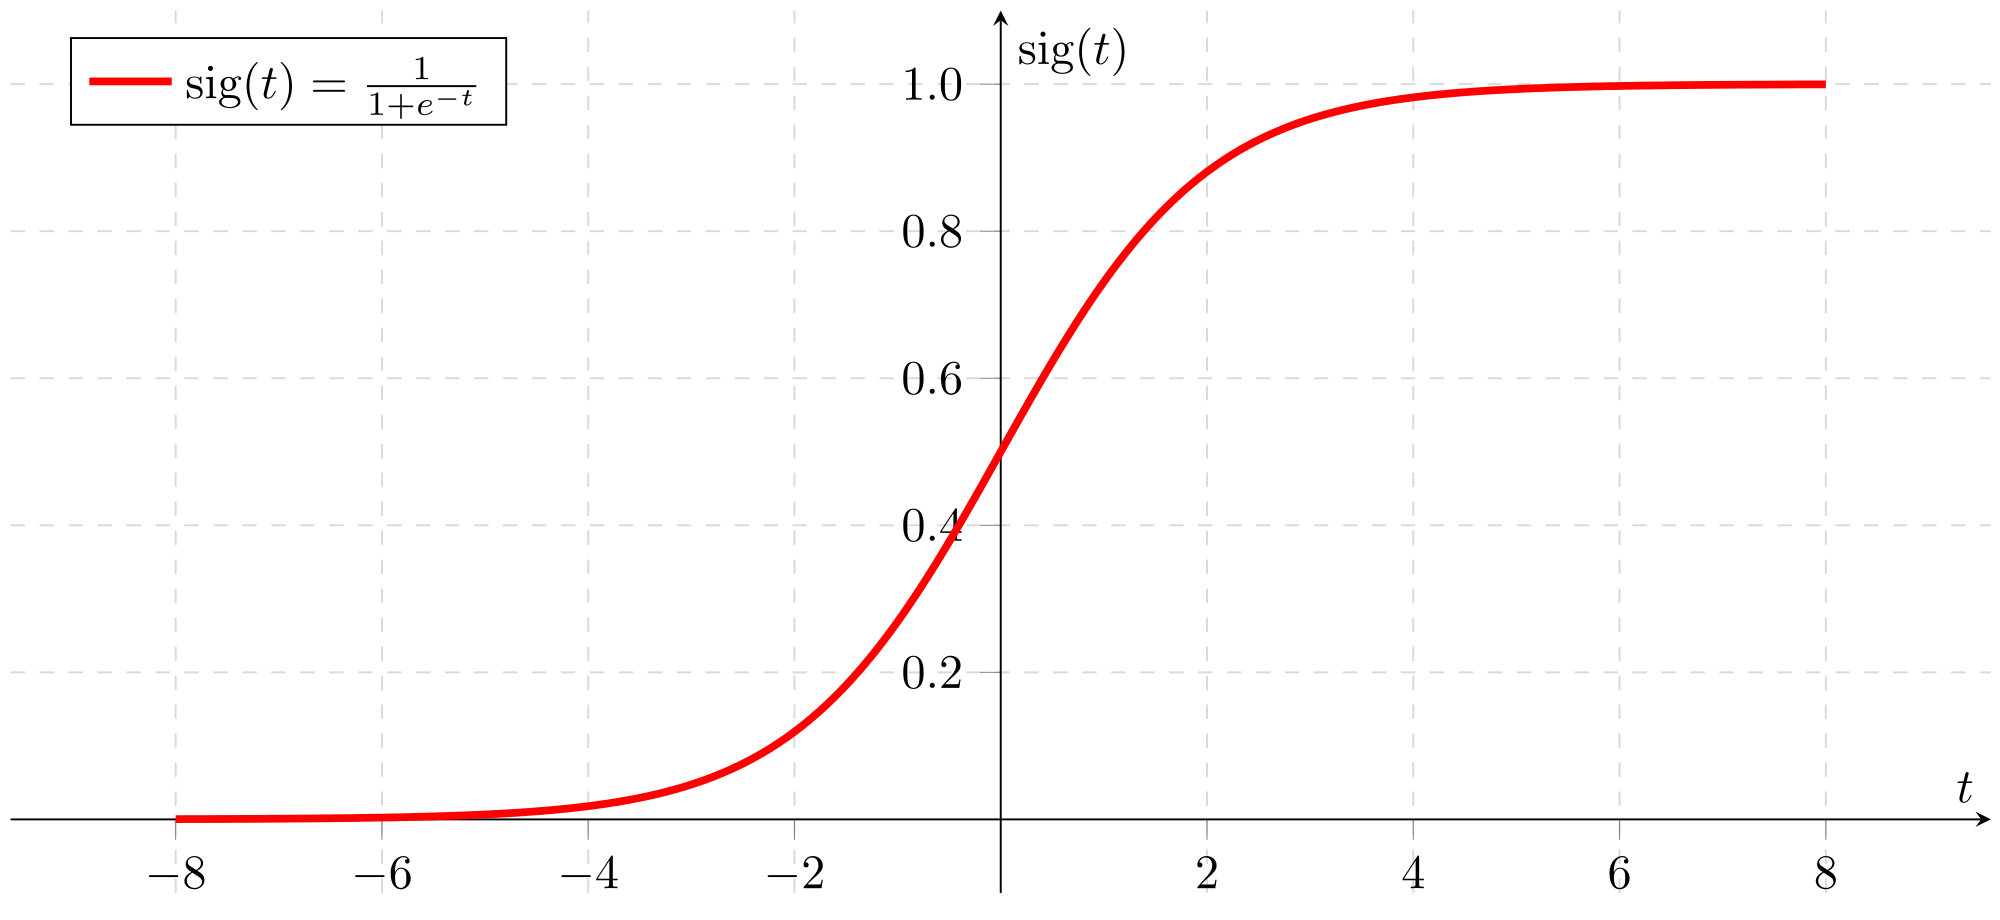 courbe représentative de la fonction sigmoïde